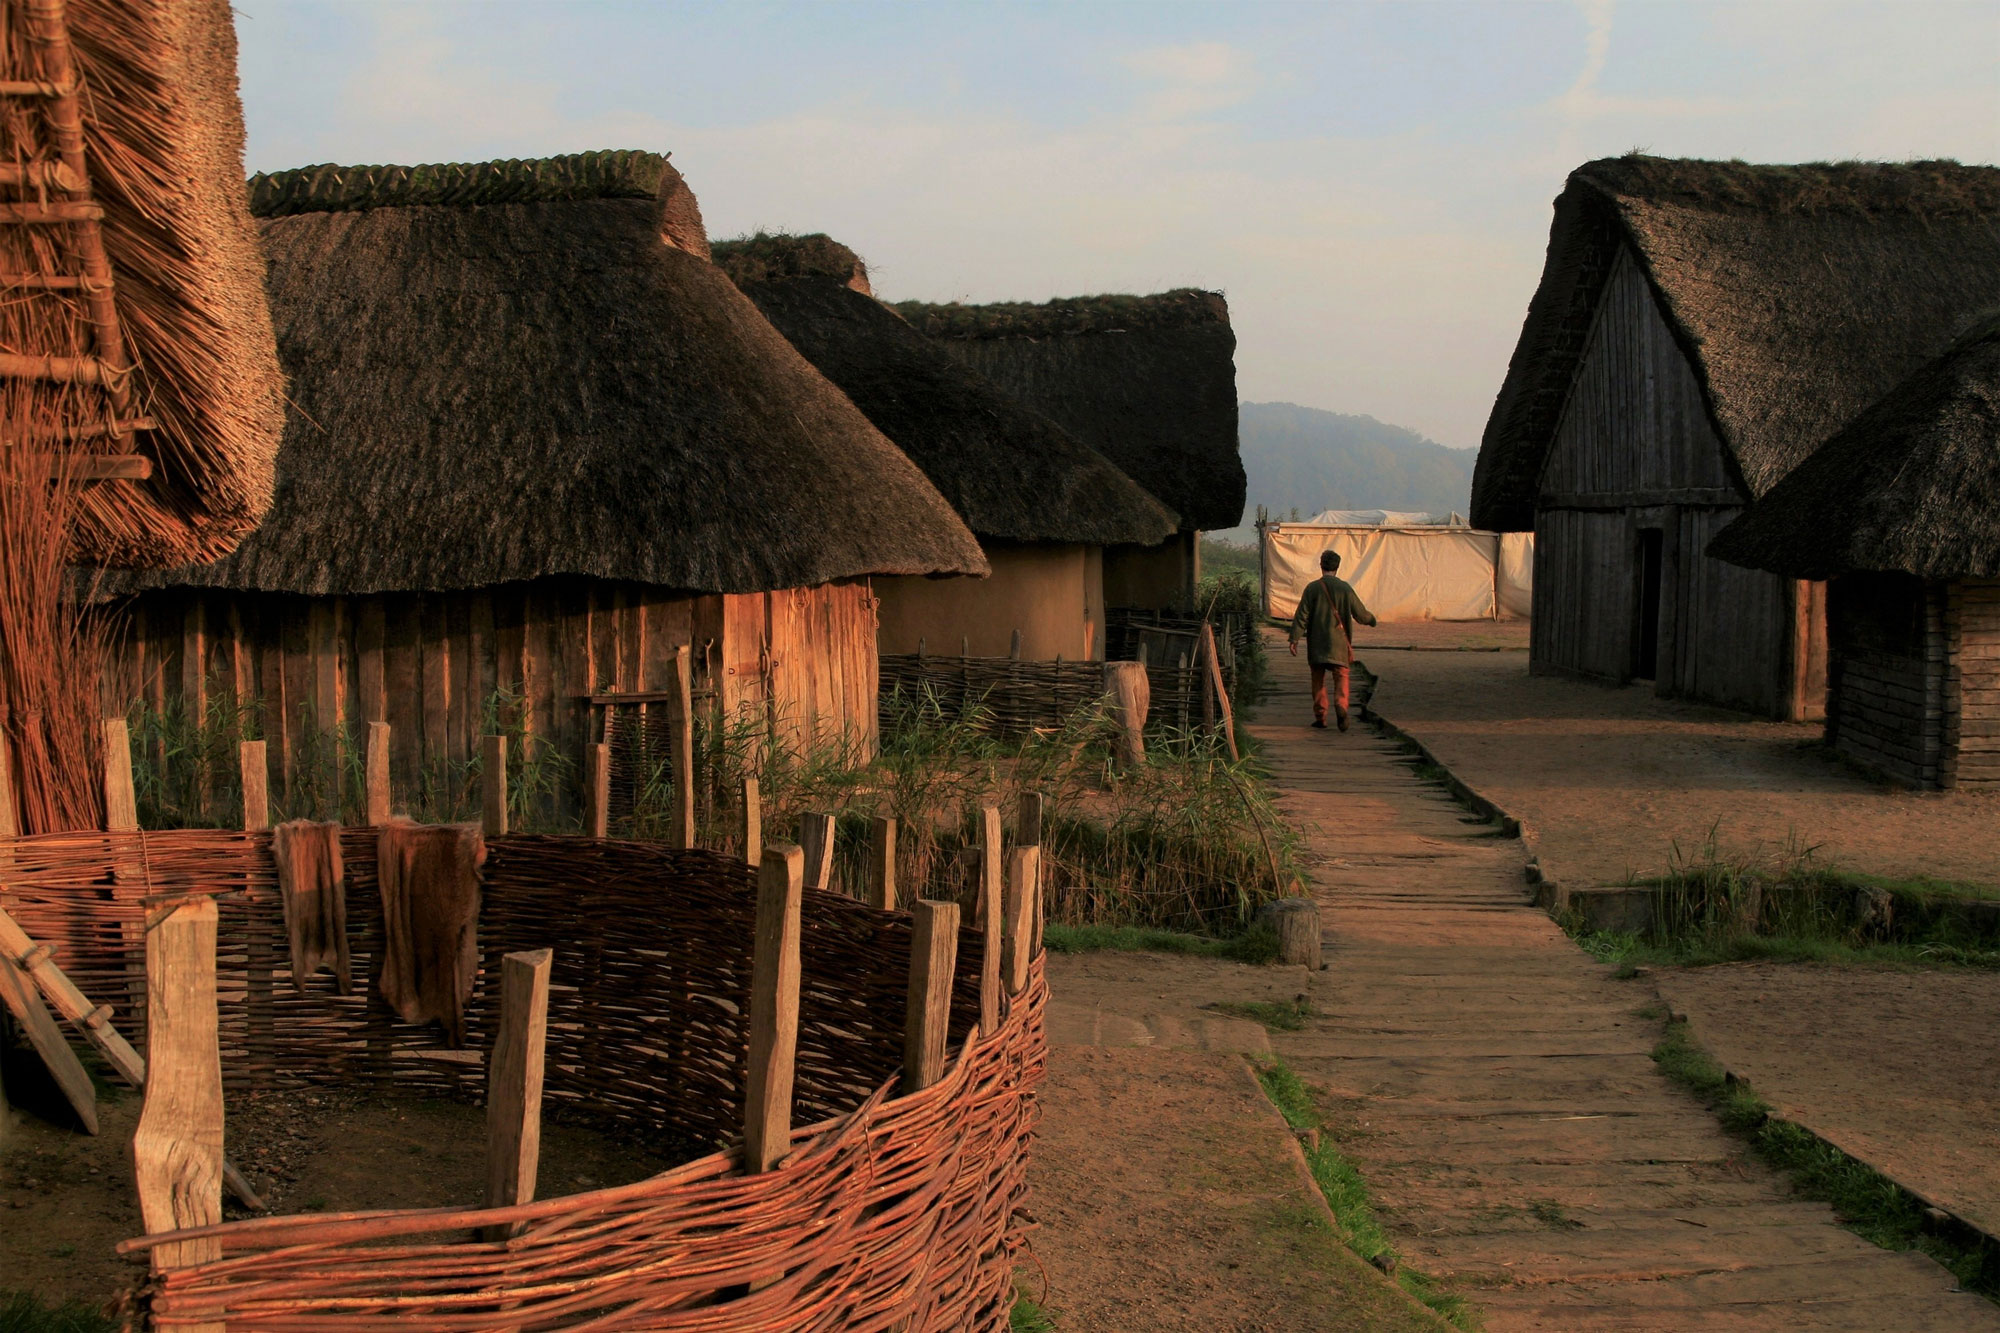 Erleben Sie im Wikinger Museum Haithabu, wie Menschen im Frühmittelalter gelebt haben.